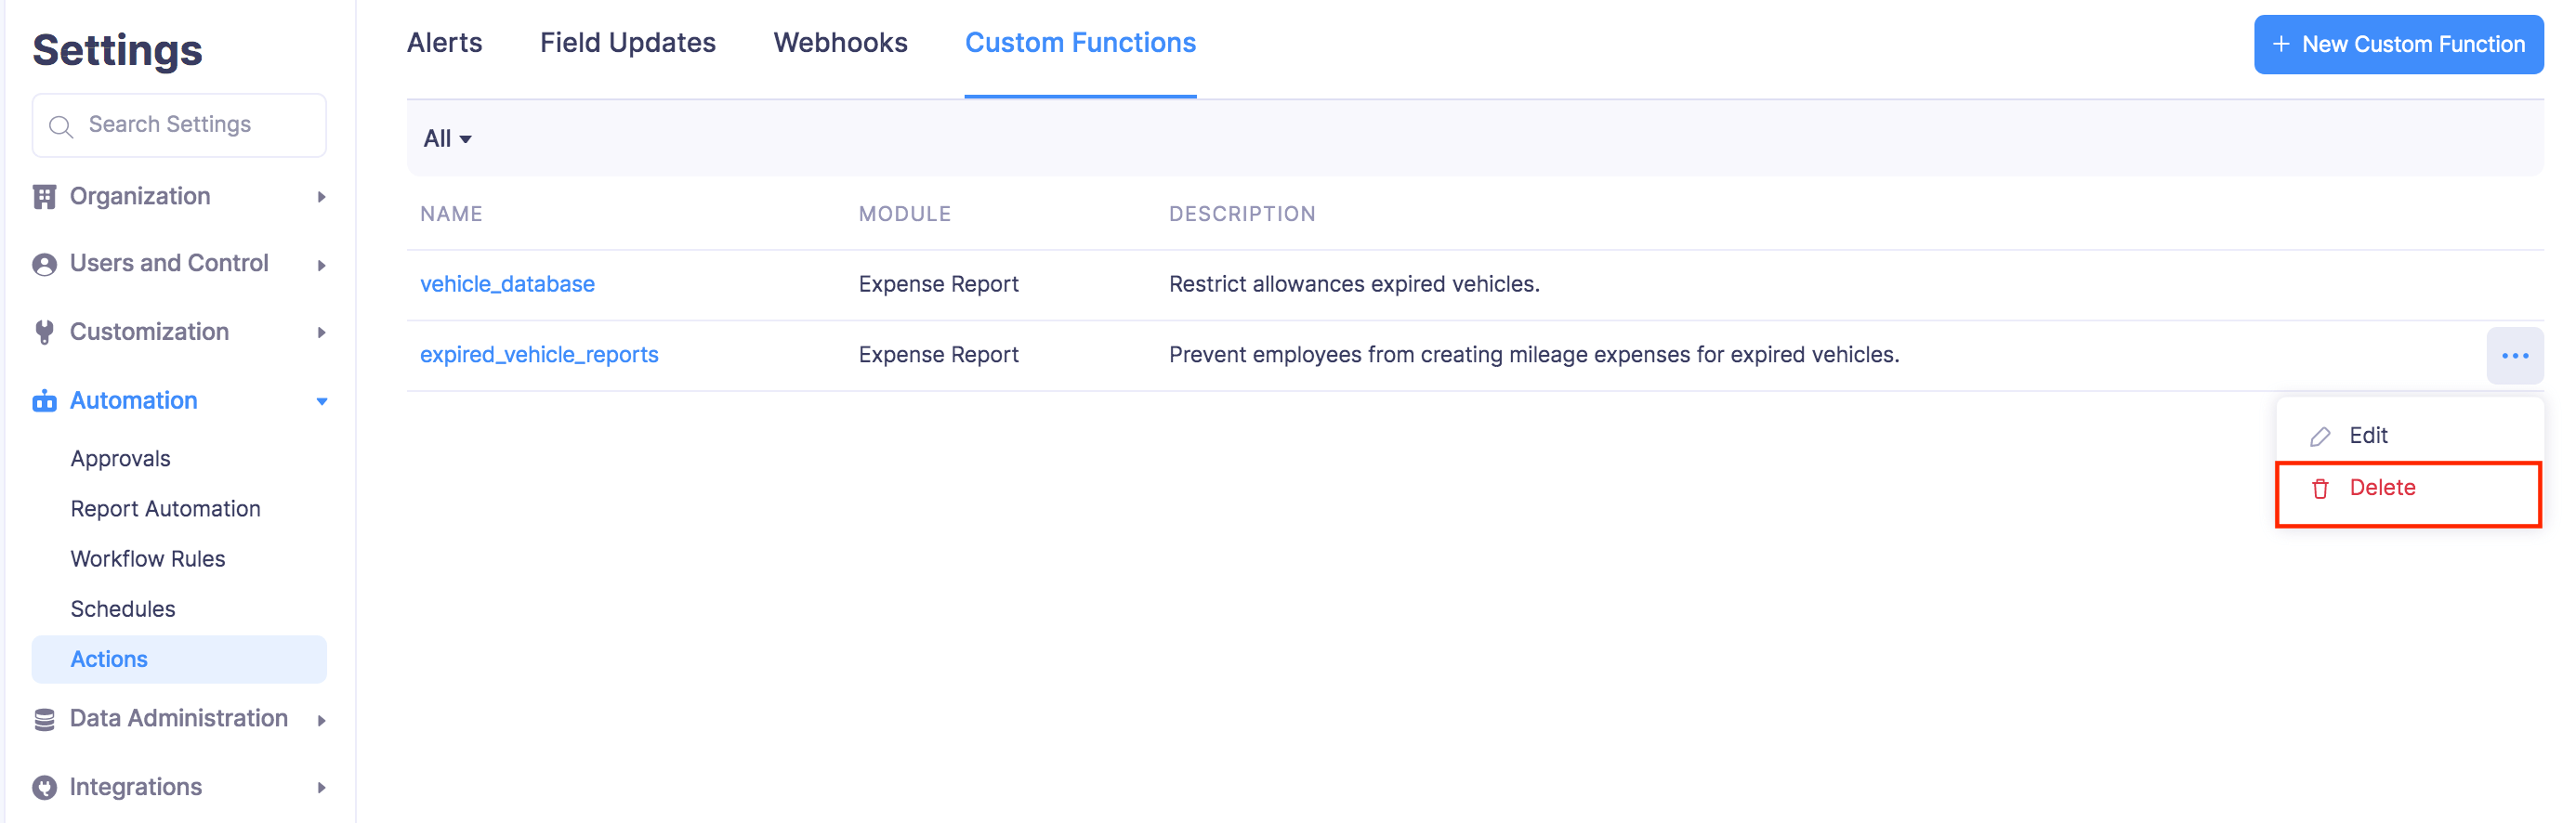 Delete Custom Functions